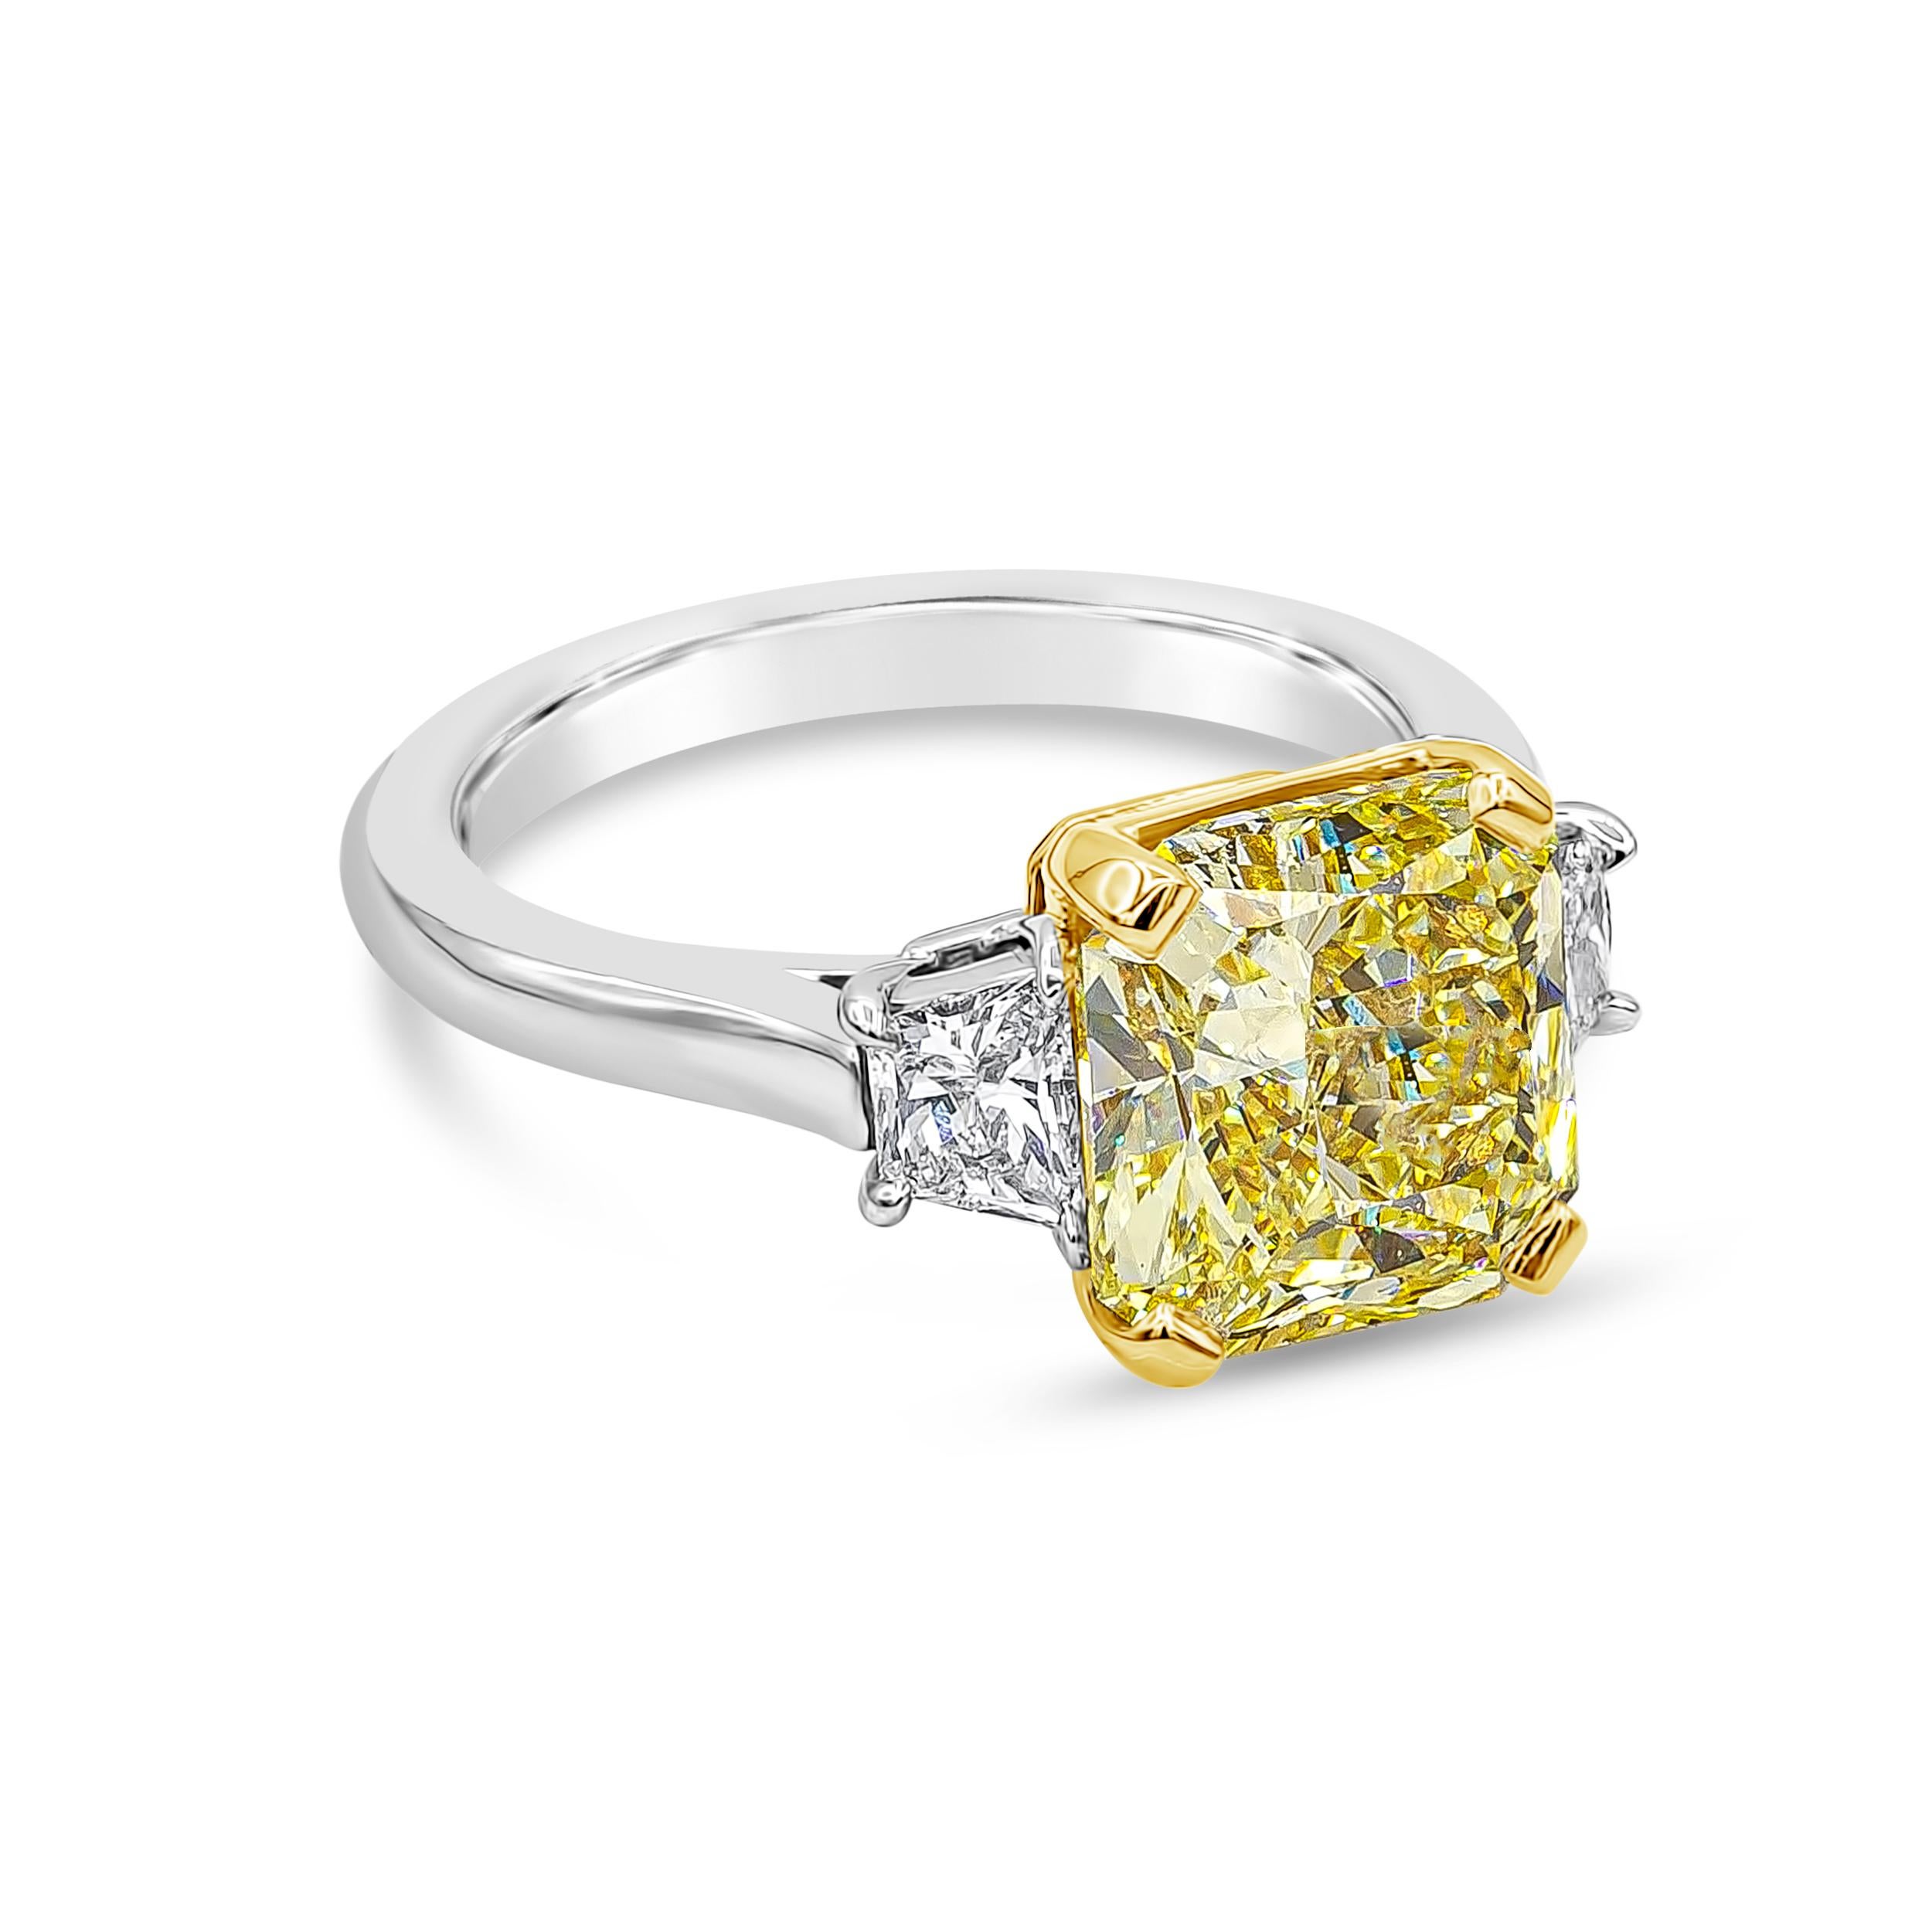 Gut gearbeiteter High-End-Verlobungsring mit einem GIA-zertifizierten farbenprächtigen Diamanten im Strahlenschliff von 3,64 Karat in der Farbe Fancy Yellow und der Reinheit VS1, eingefasst in einen vierzackigen Korb aus 18 Karat Gelbgold. Mit